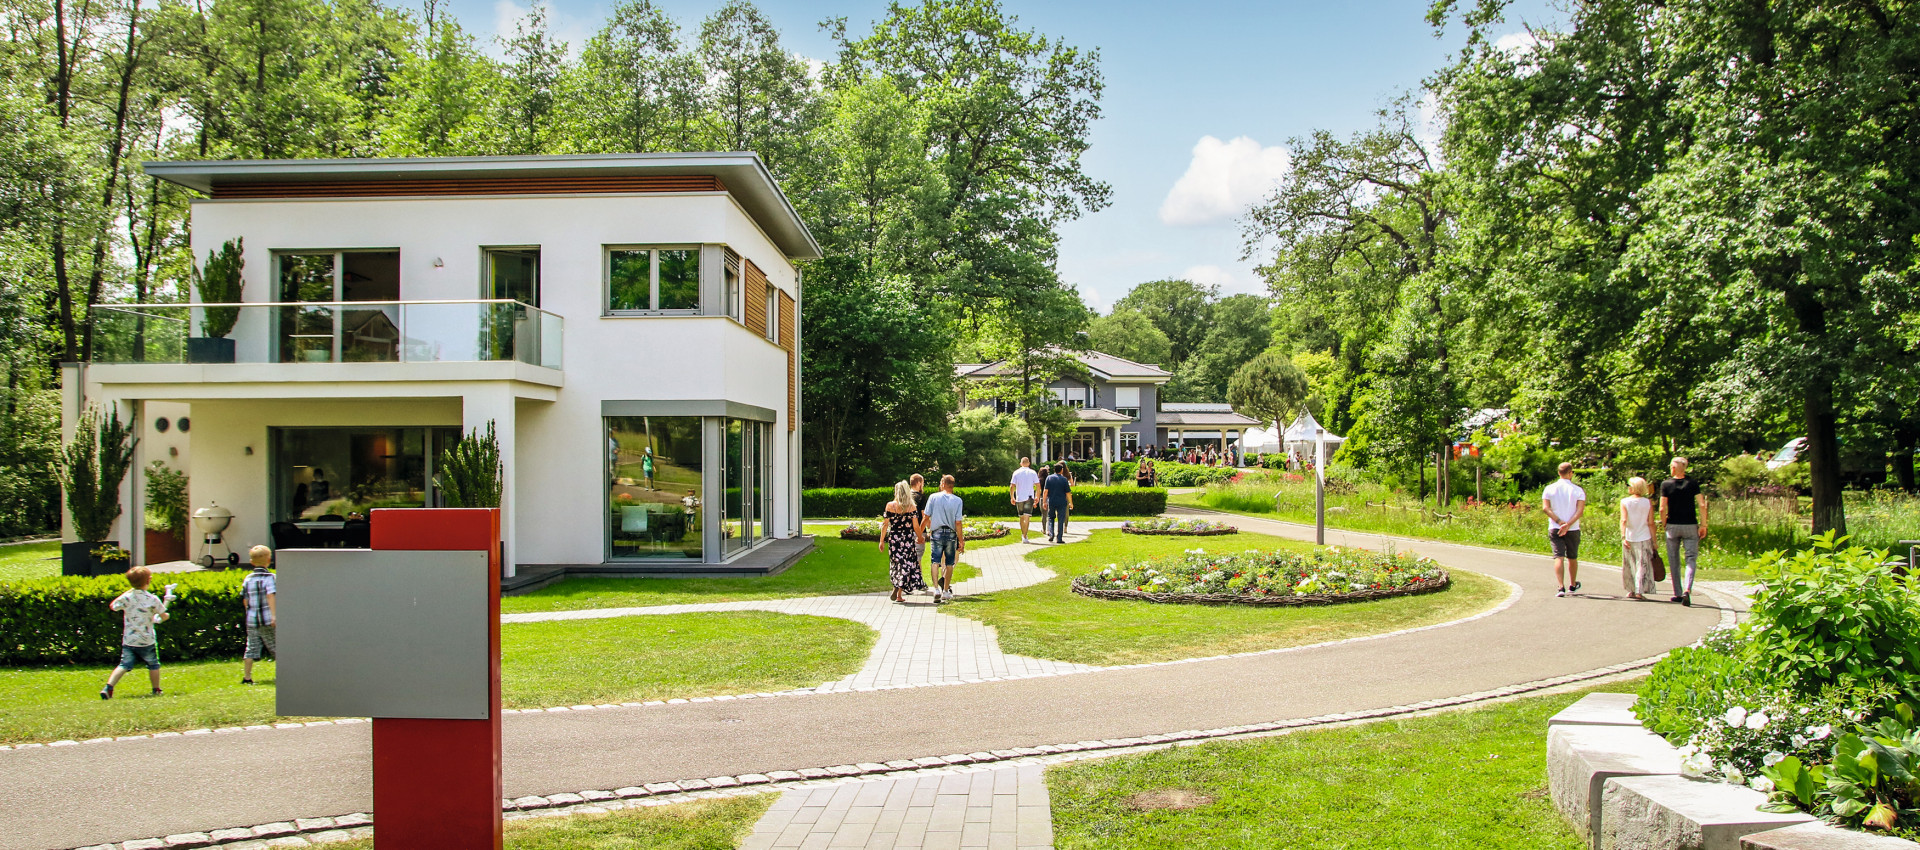 #RegioFokus Immobilien: Mieter bleiben oder lieber ein Haus bauen? Interview mit WeberHaus.